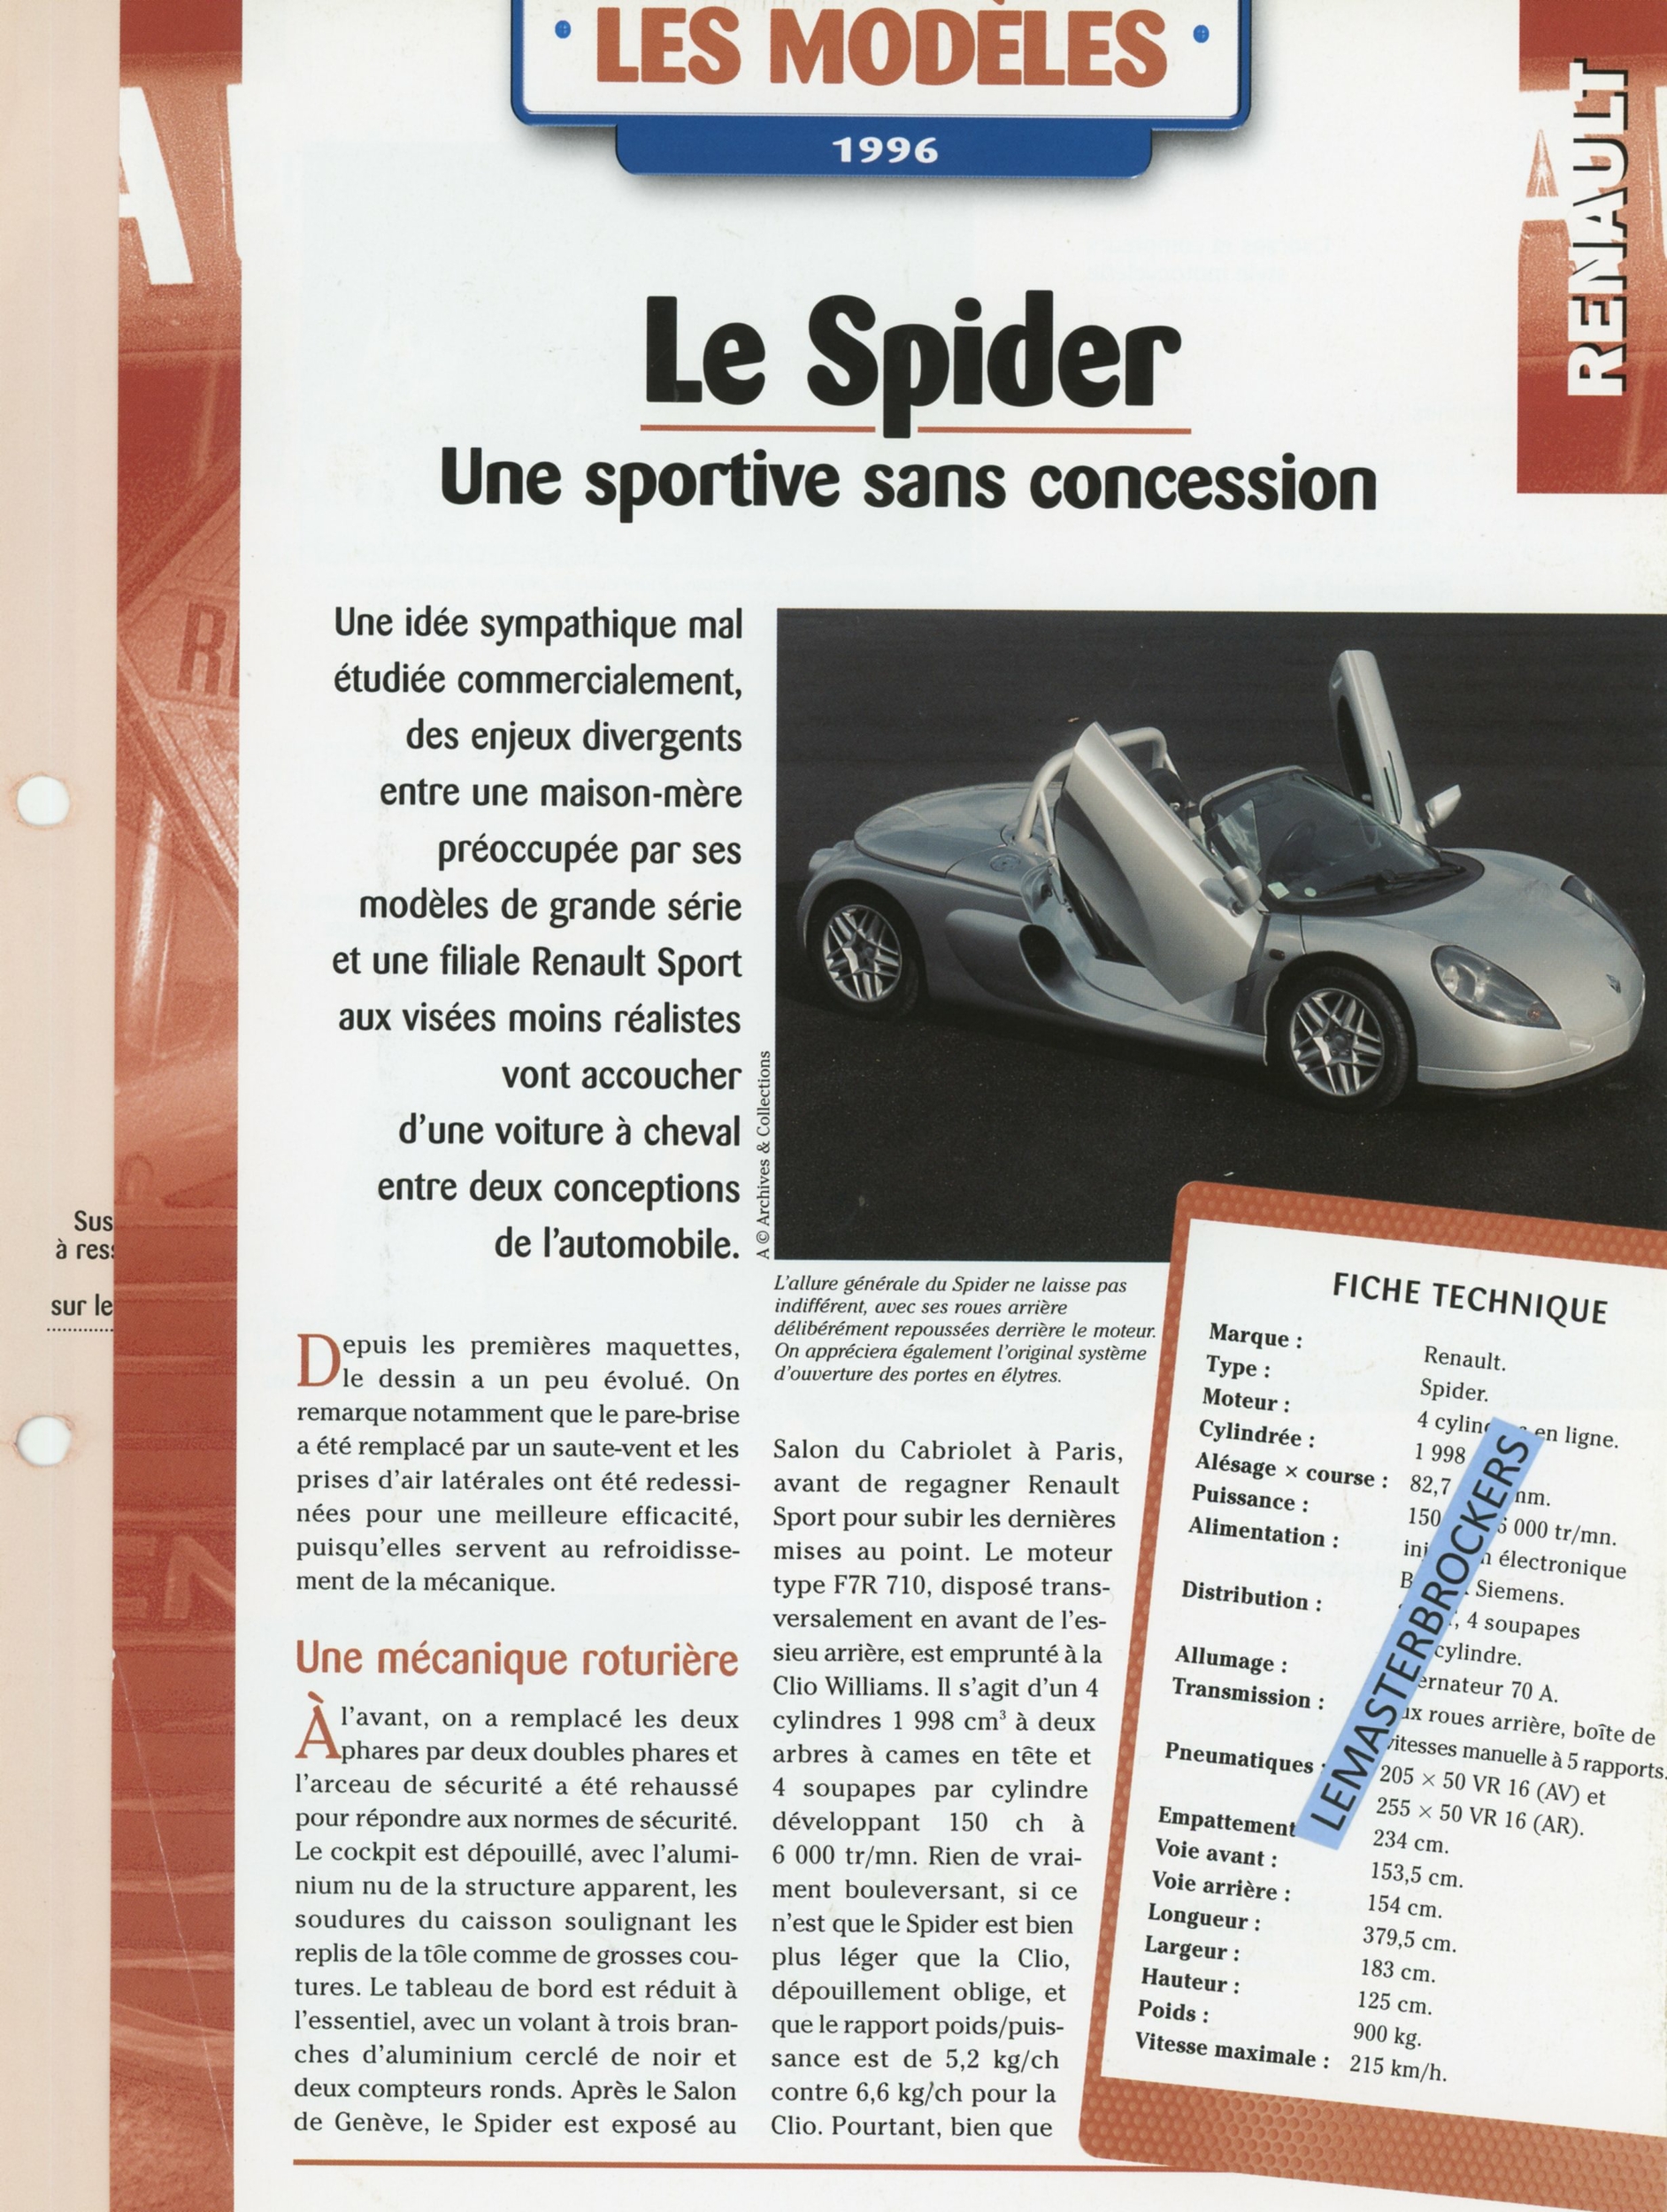 RENAULT SPIDER SPORTIVE SANS CONCESSION - FICHE AUTO HACHETTE  4 PAGES LES MODÈLES 1996